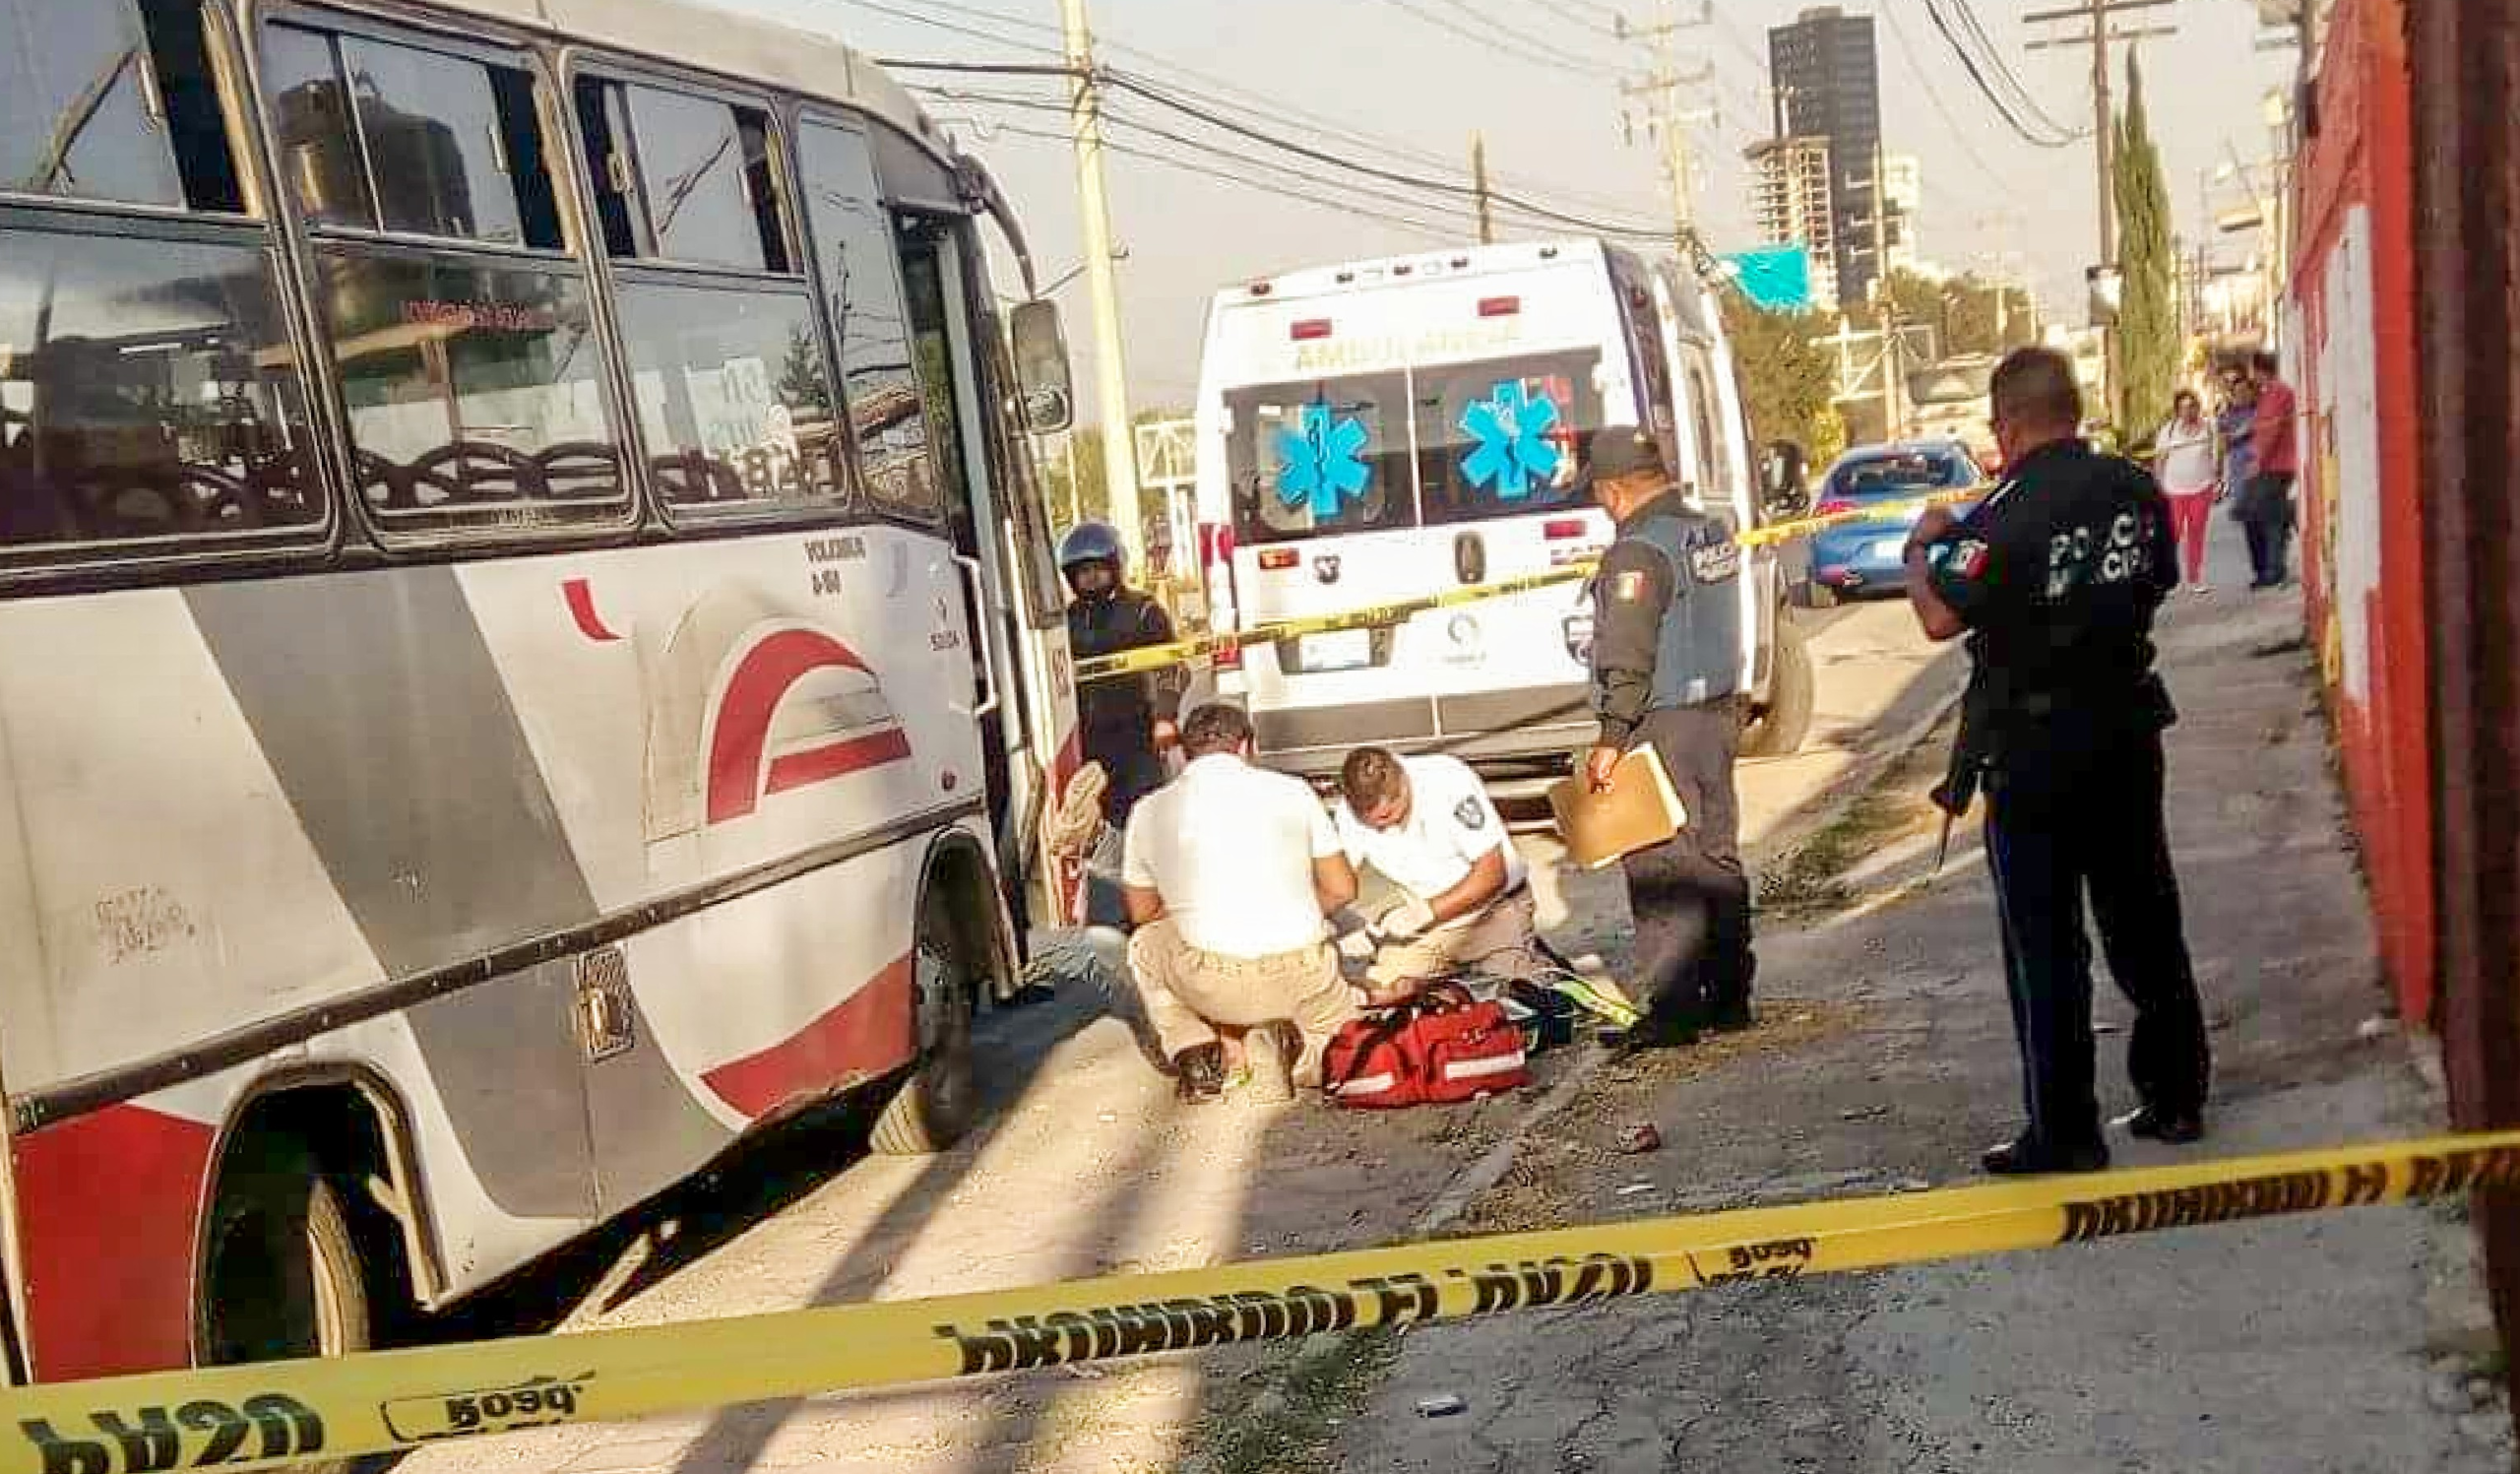 Se registra doble asalto a mano armada a rutas de transporte público esta mañana en Puebla